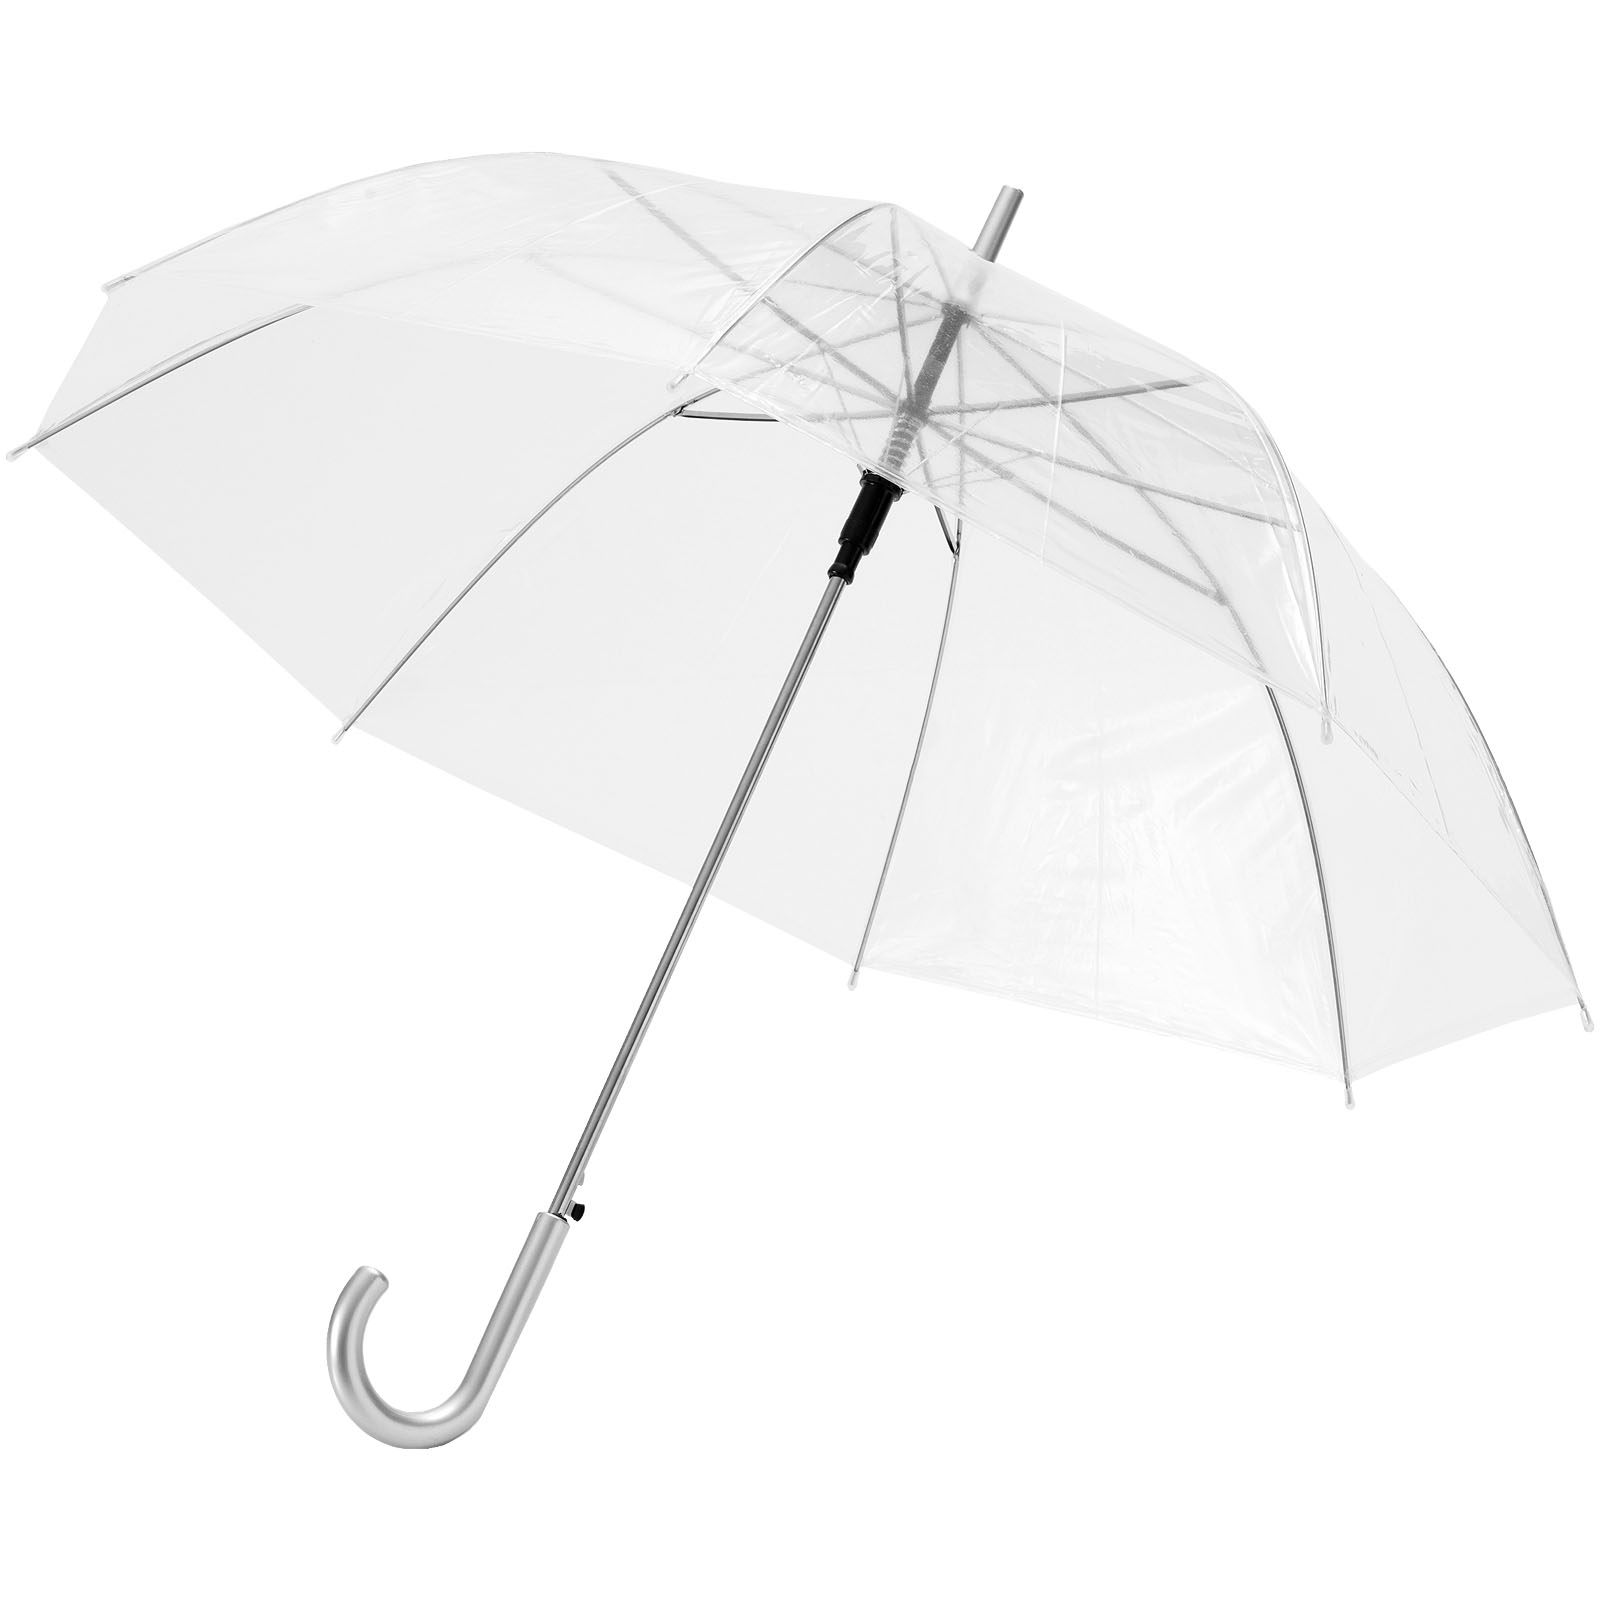 Průhledný automatický deštník SIZY, 23 palců - transparent white